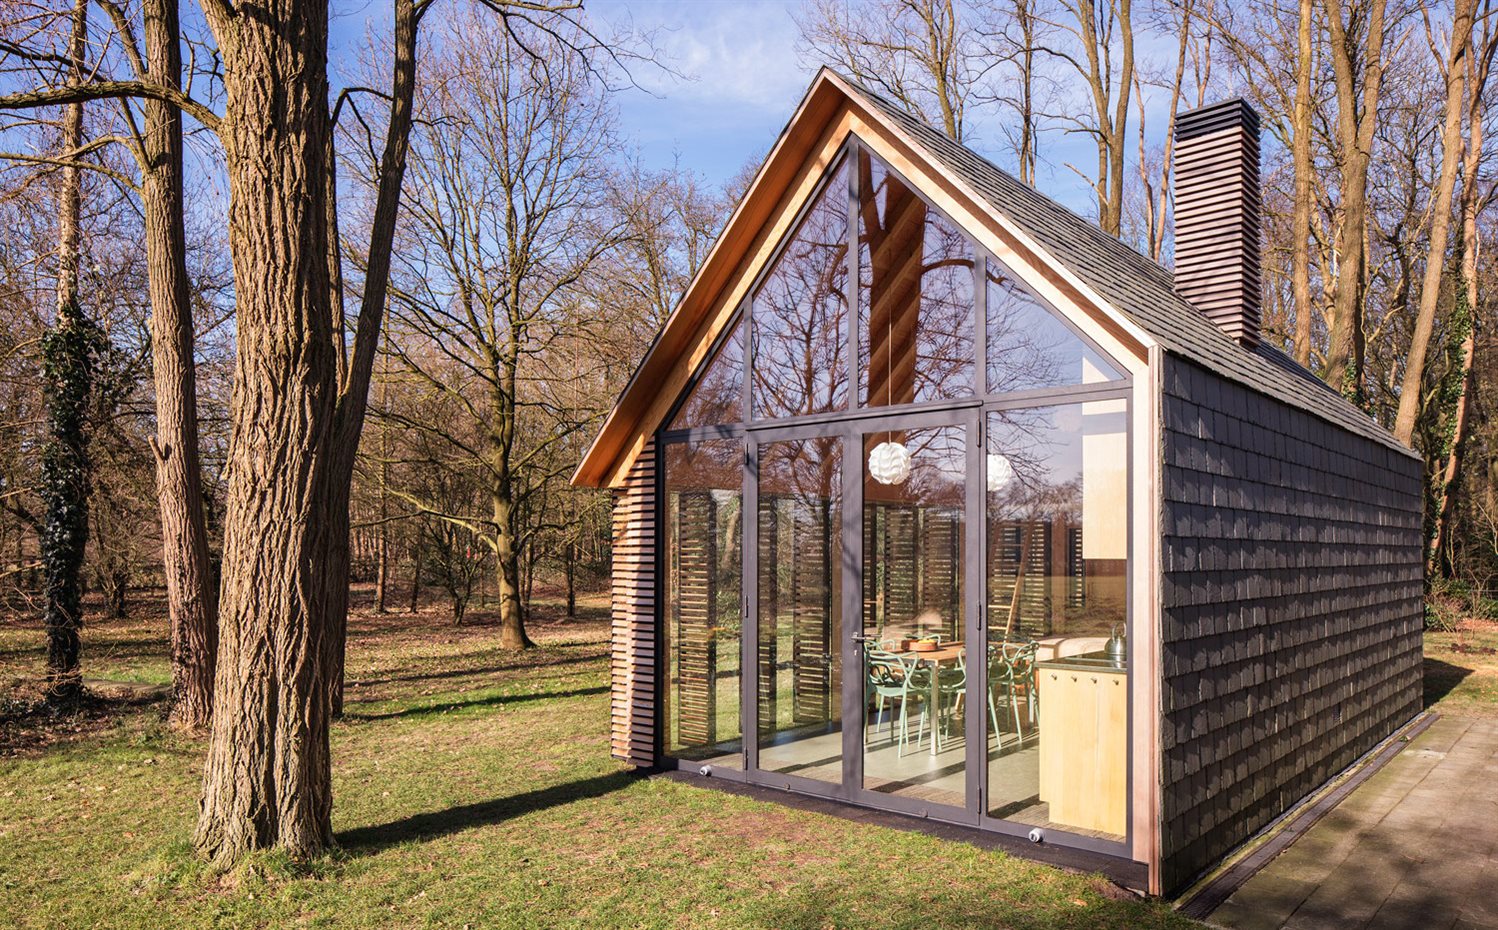 SP2015-Zecc-Tuinhuis-1-HiRes. La cabaña se construyó sobre los cimientos de una caseta de jardín de un bosque de Utrech y respetando su forma y algunos elementos originales